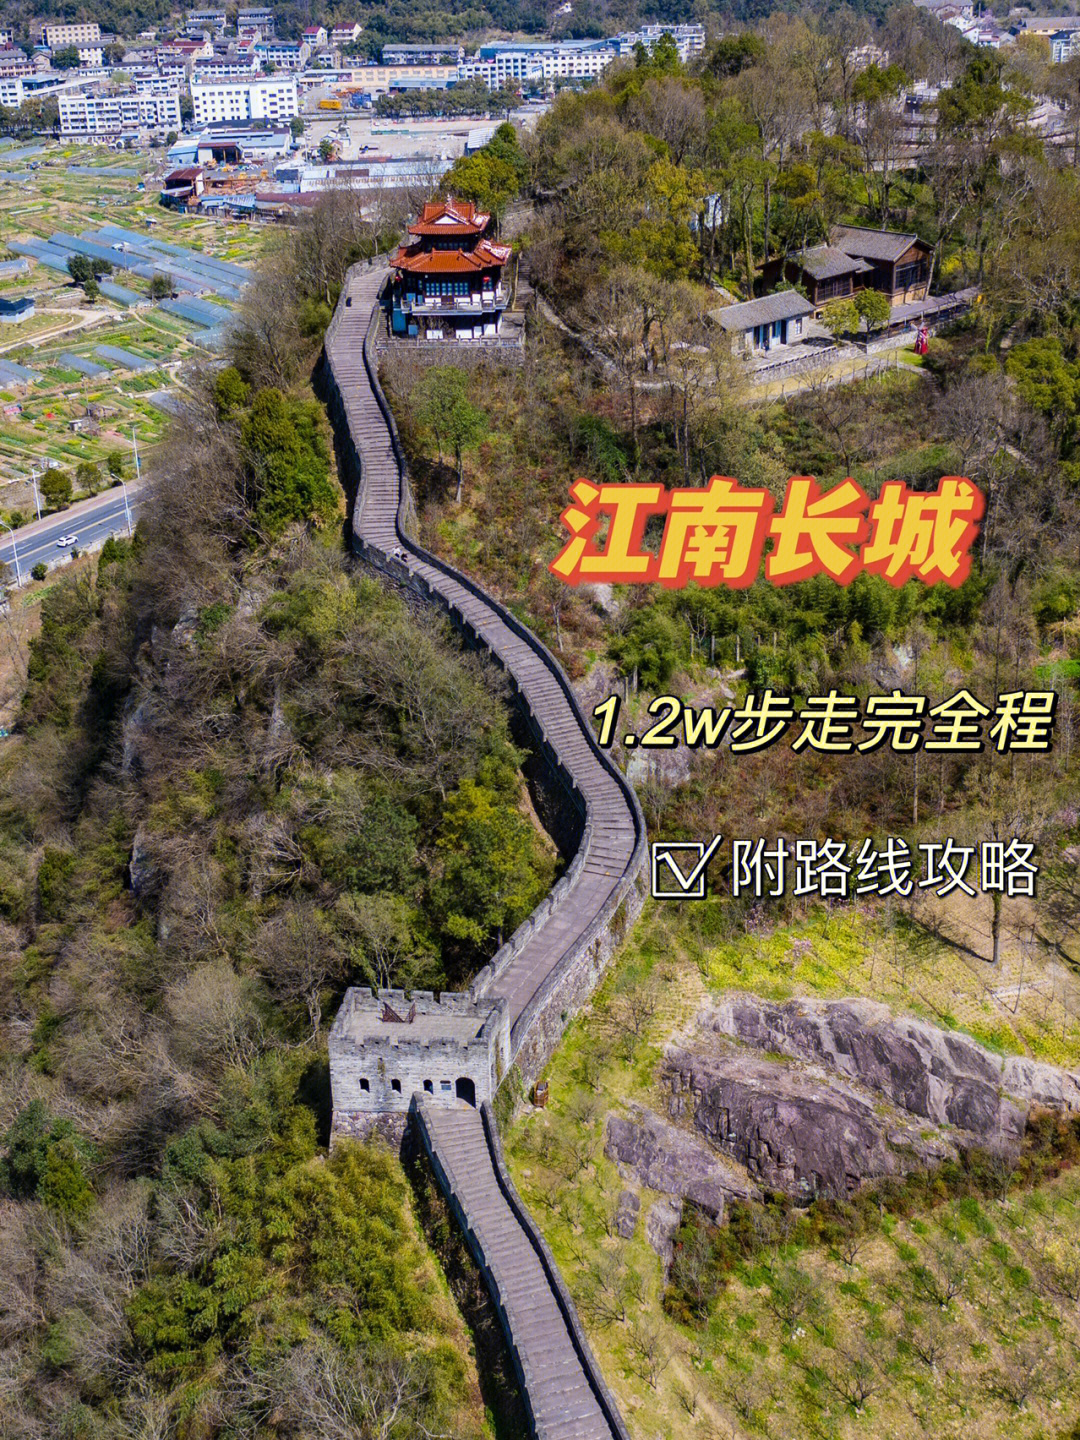 江南长城是位于浙江临海市的台州府城墙,它东起揽胜门,沿北固山山脊而